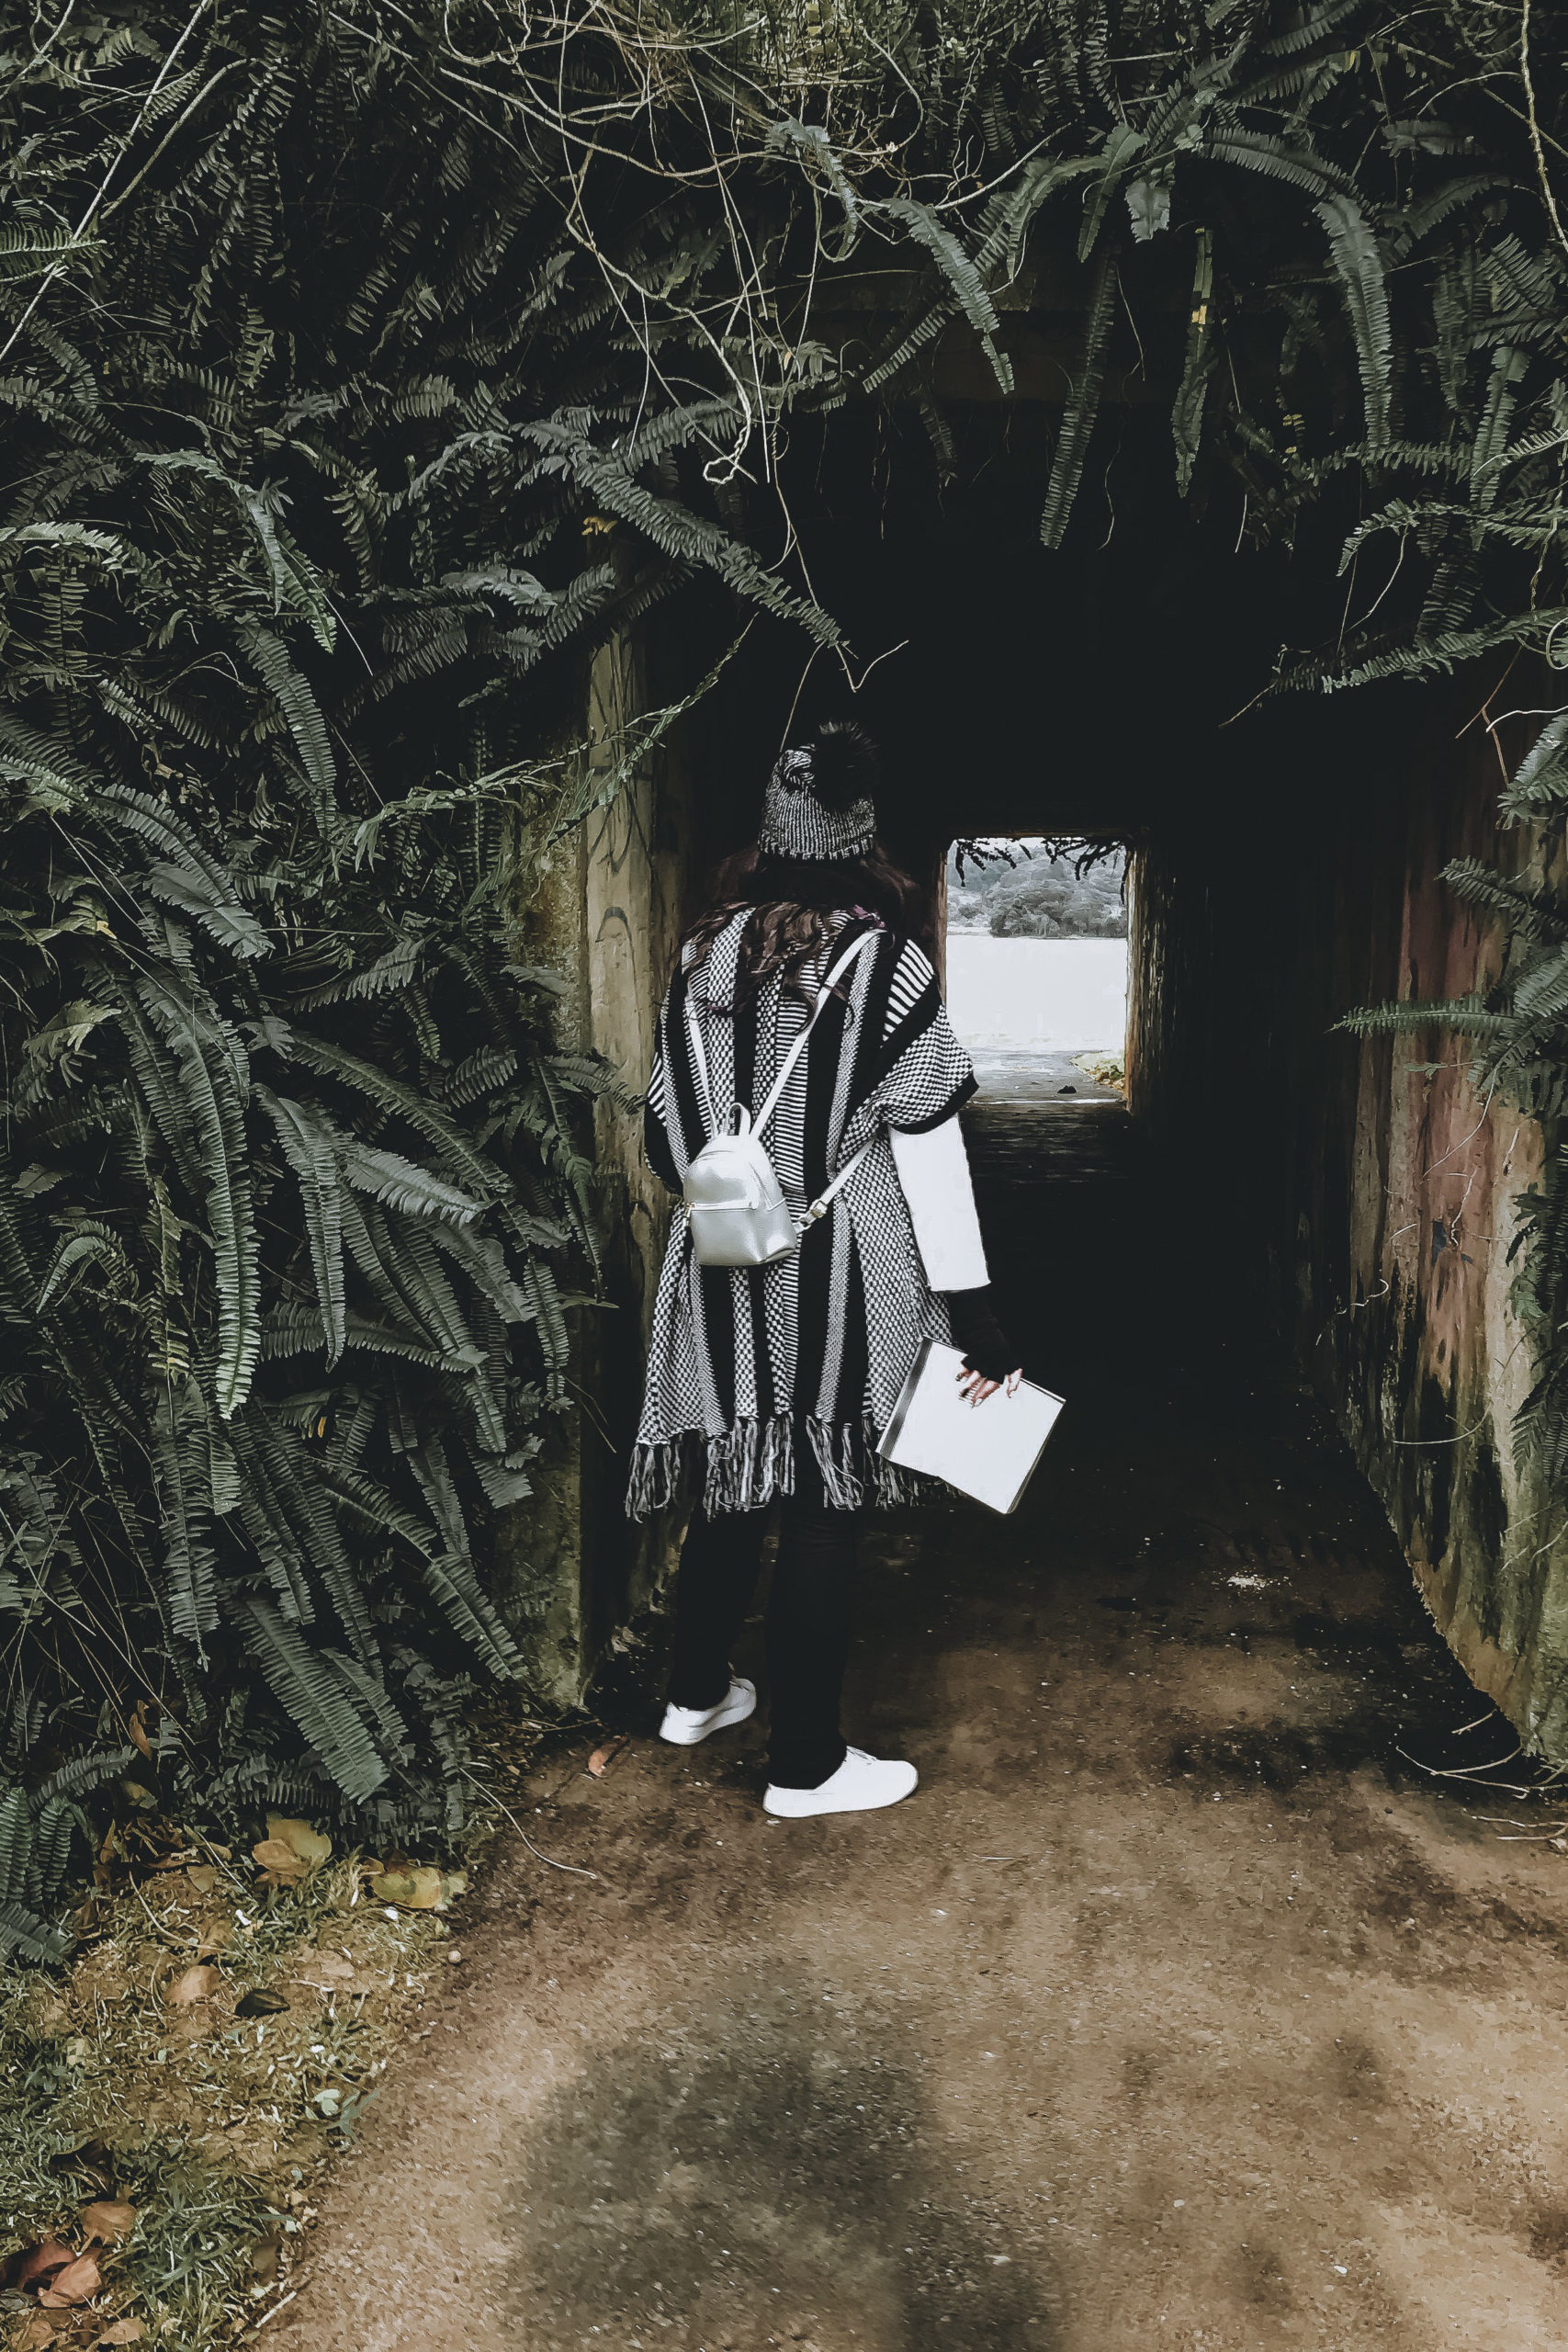 foto de uma mulher de costas, olhando para um túnel que passa entre samambaias. A mulher está vestida com roupas de inverno e segura um livro aberto na mão.